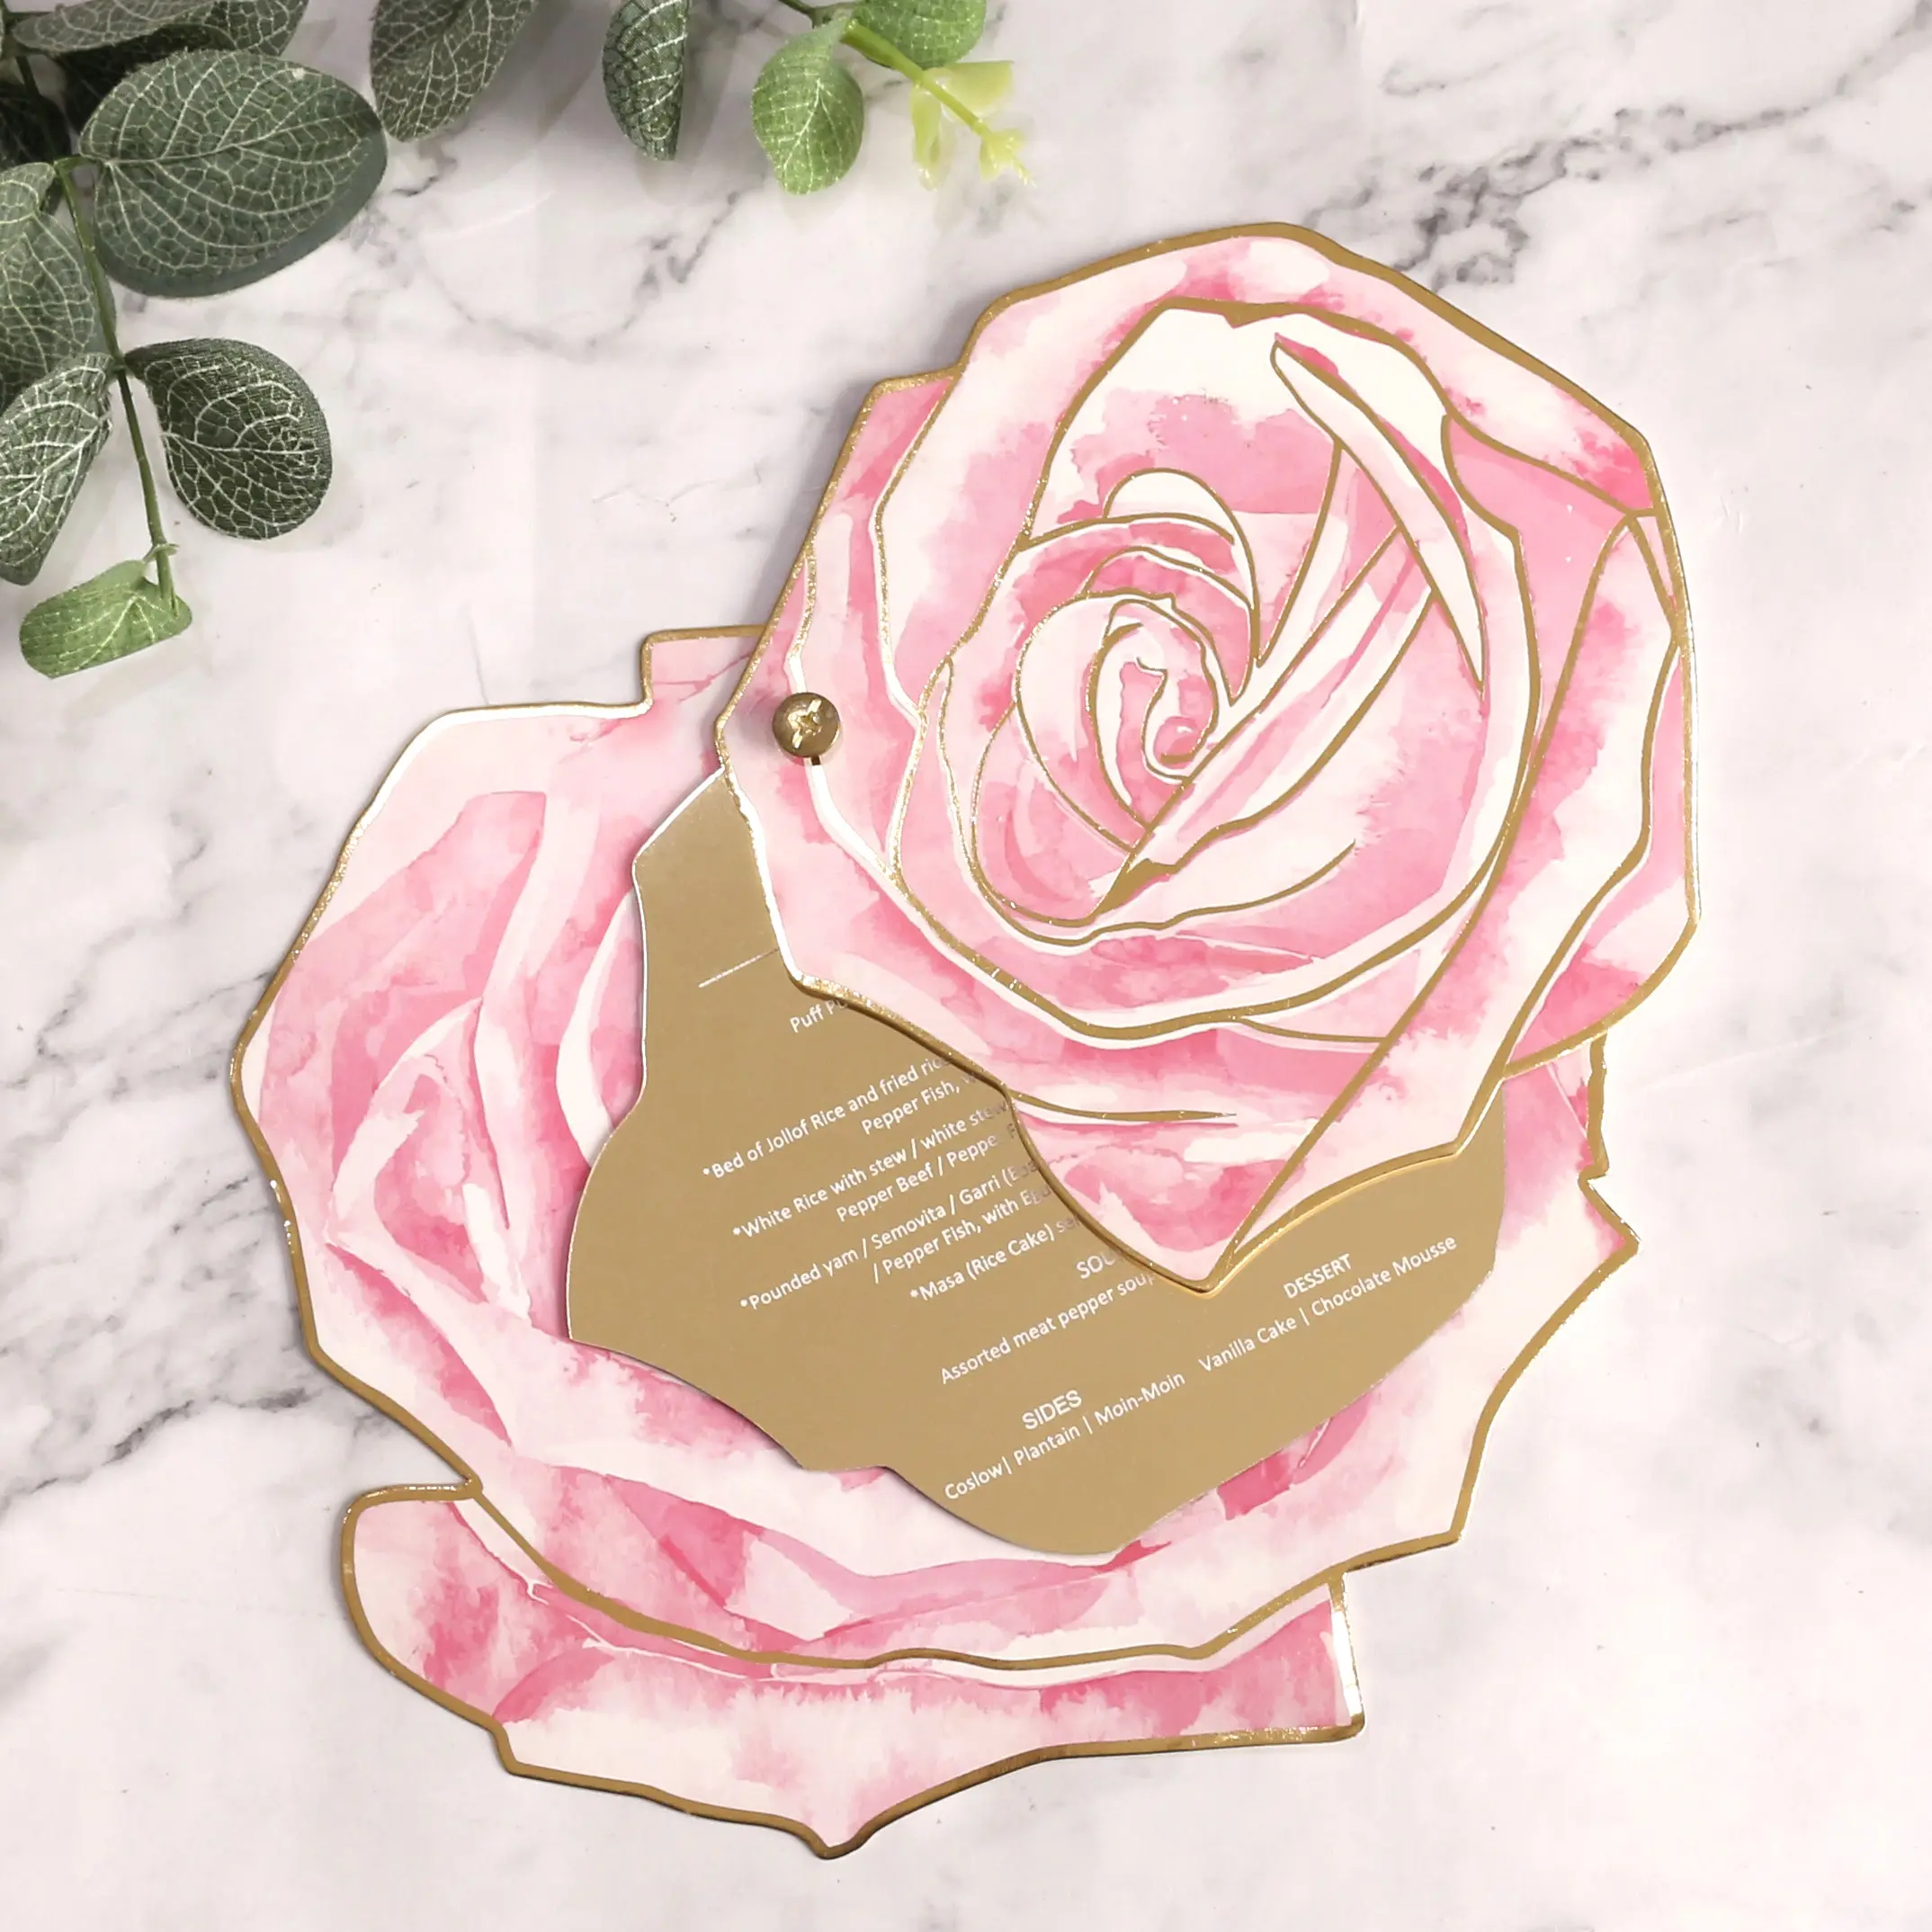 Luxus personal isierte Form romantische Rose Design Papier und Spiegel Acryl Hochzeit Menü karten mit Goldfolie und bunten Druck